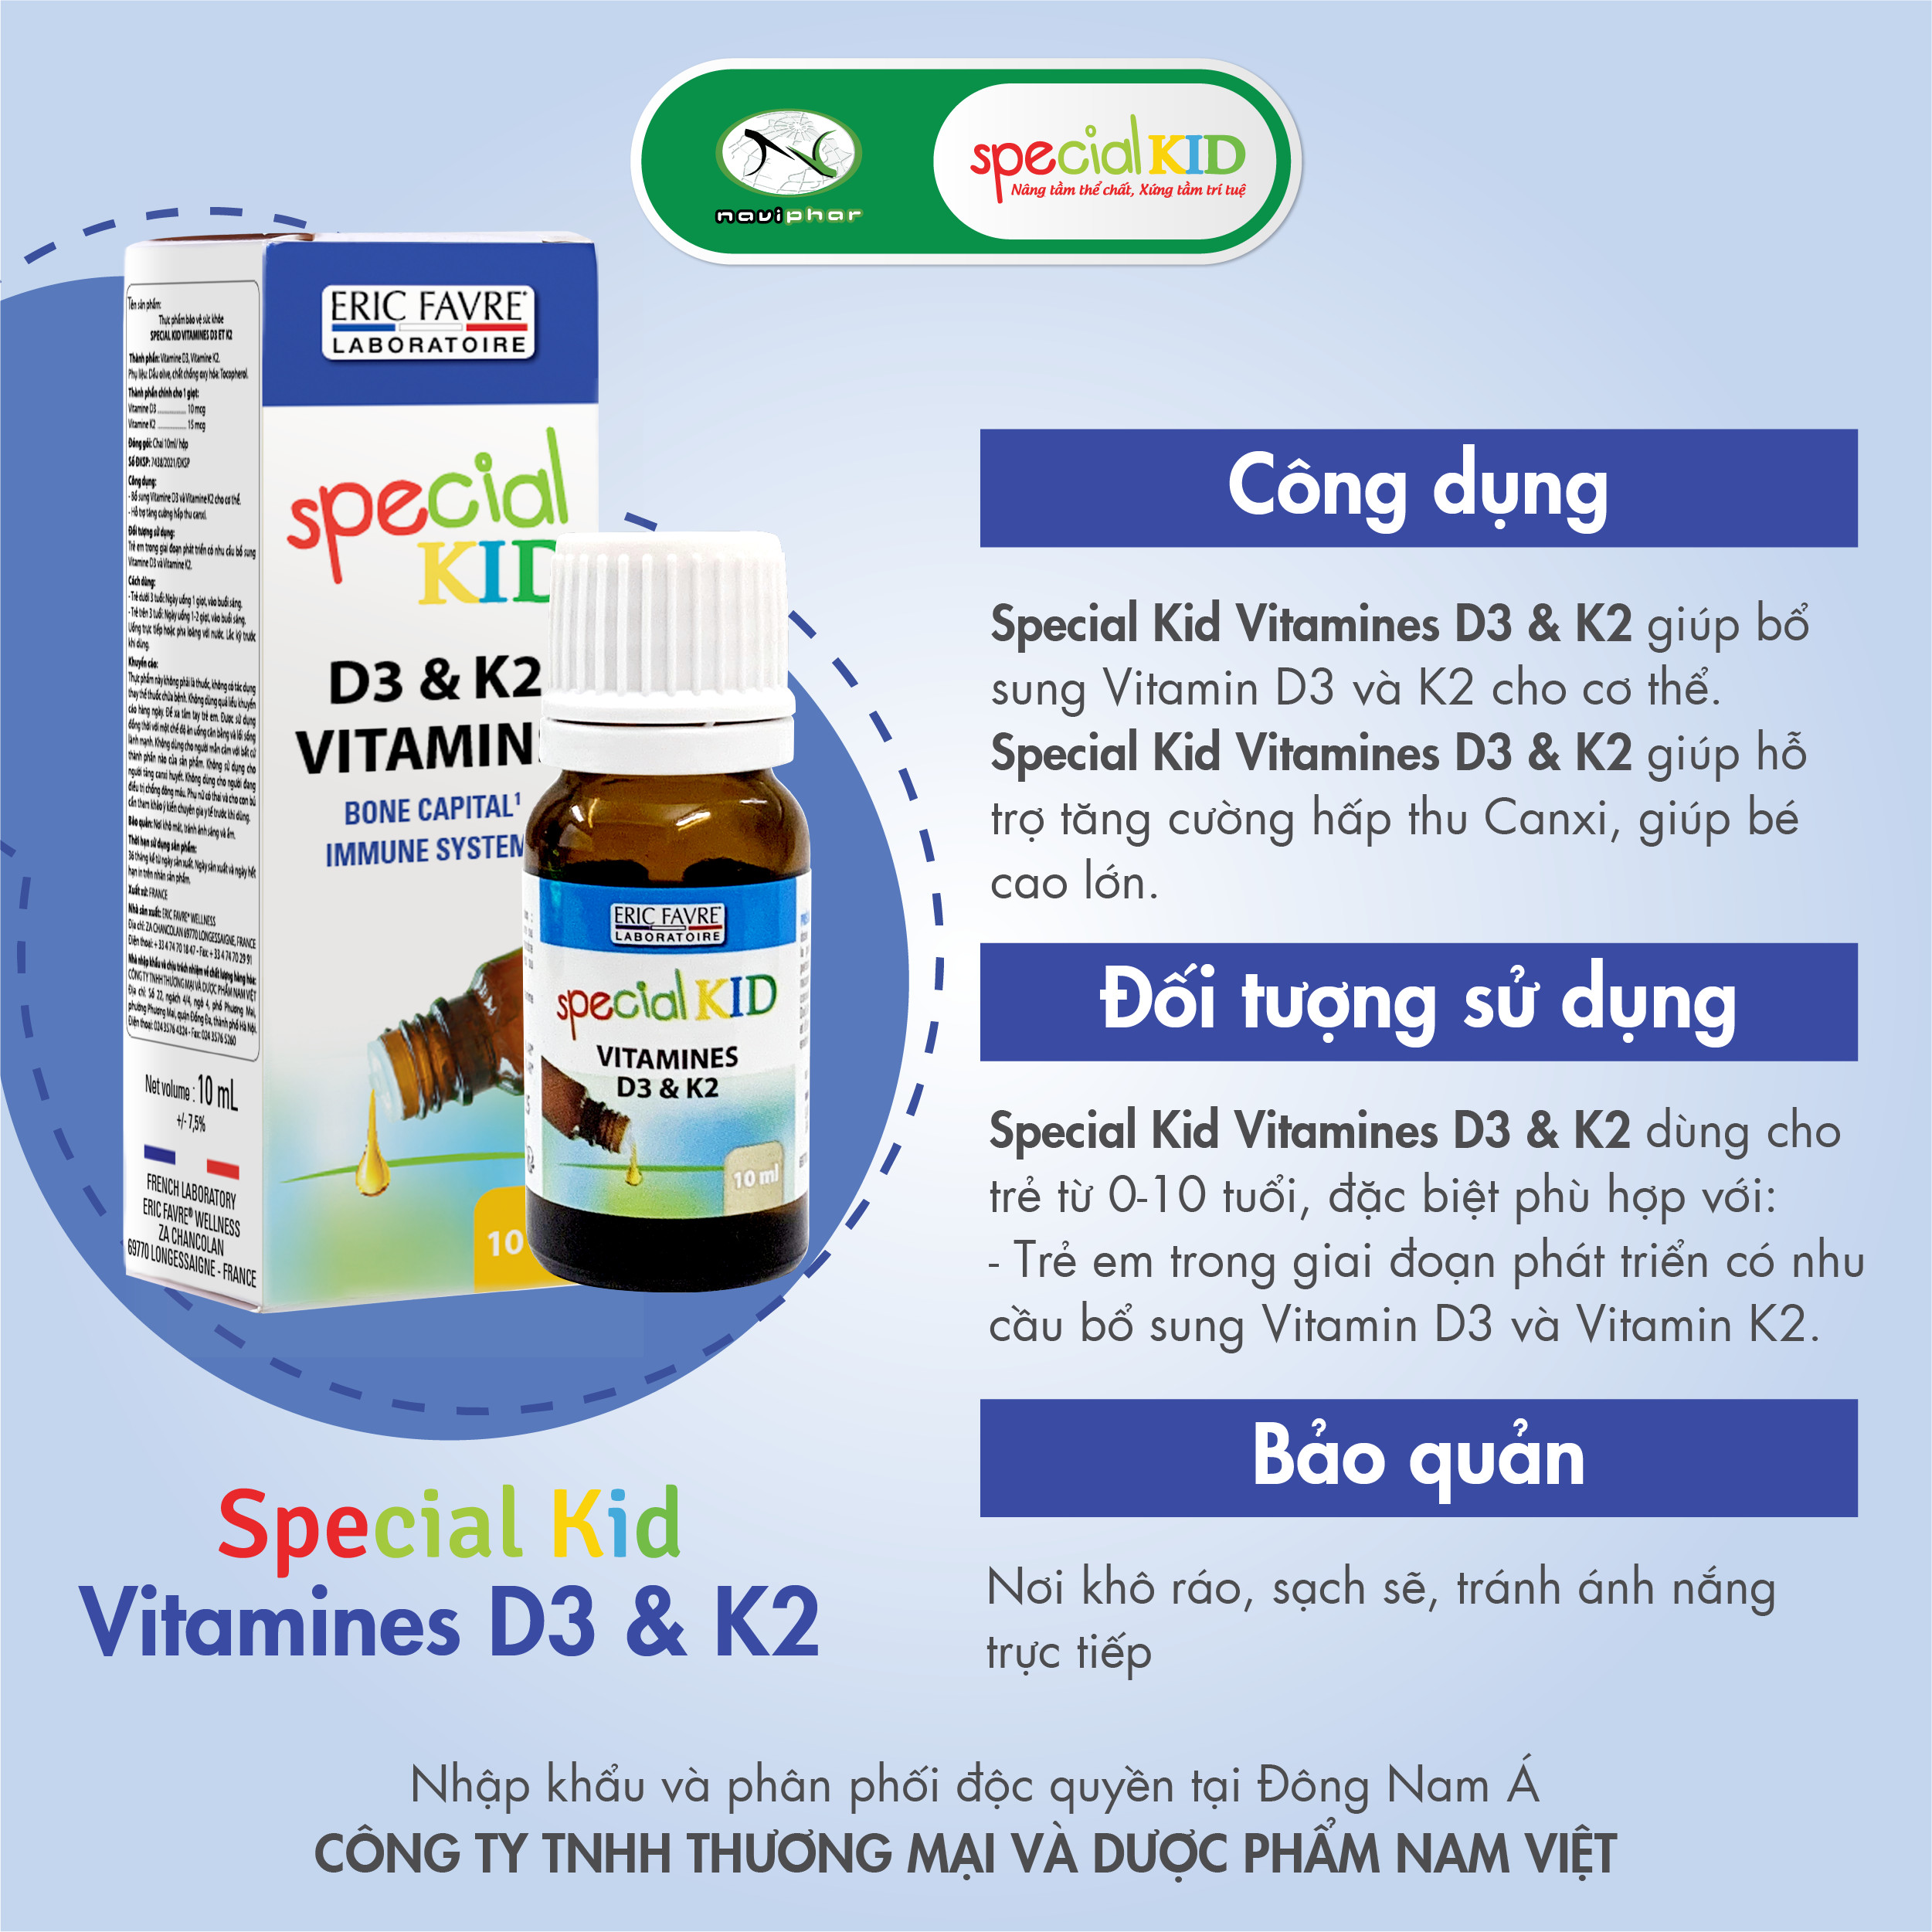 TPBVSK Special Kid Vitamines D3 et K2 - Tinh dầu bổ sung Vitamin D3 và Vitamin K2, hỗ trợ tăng cường hấp thu canxi (10ml) [Nhập khẩu Pháp]